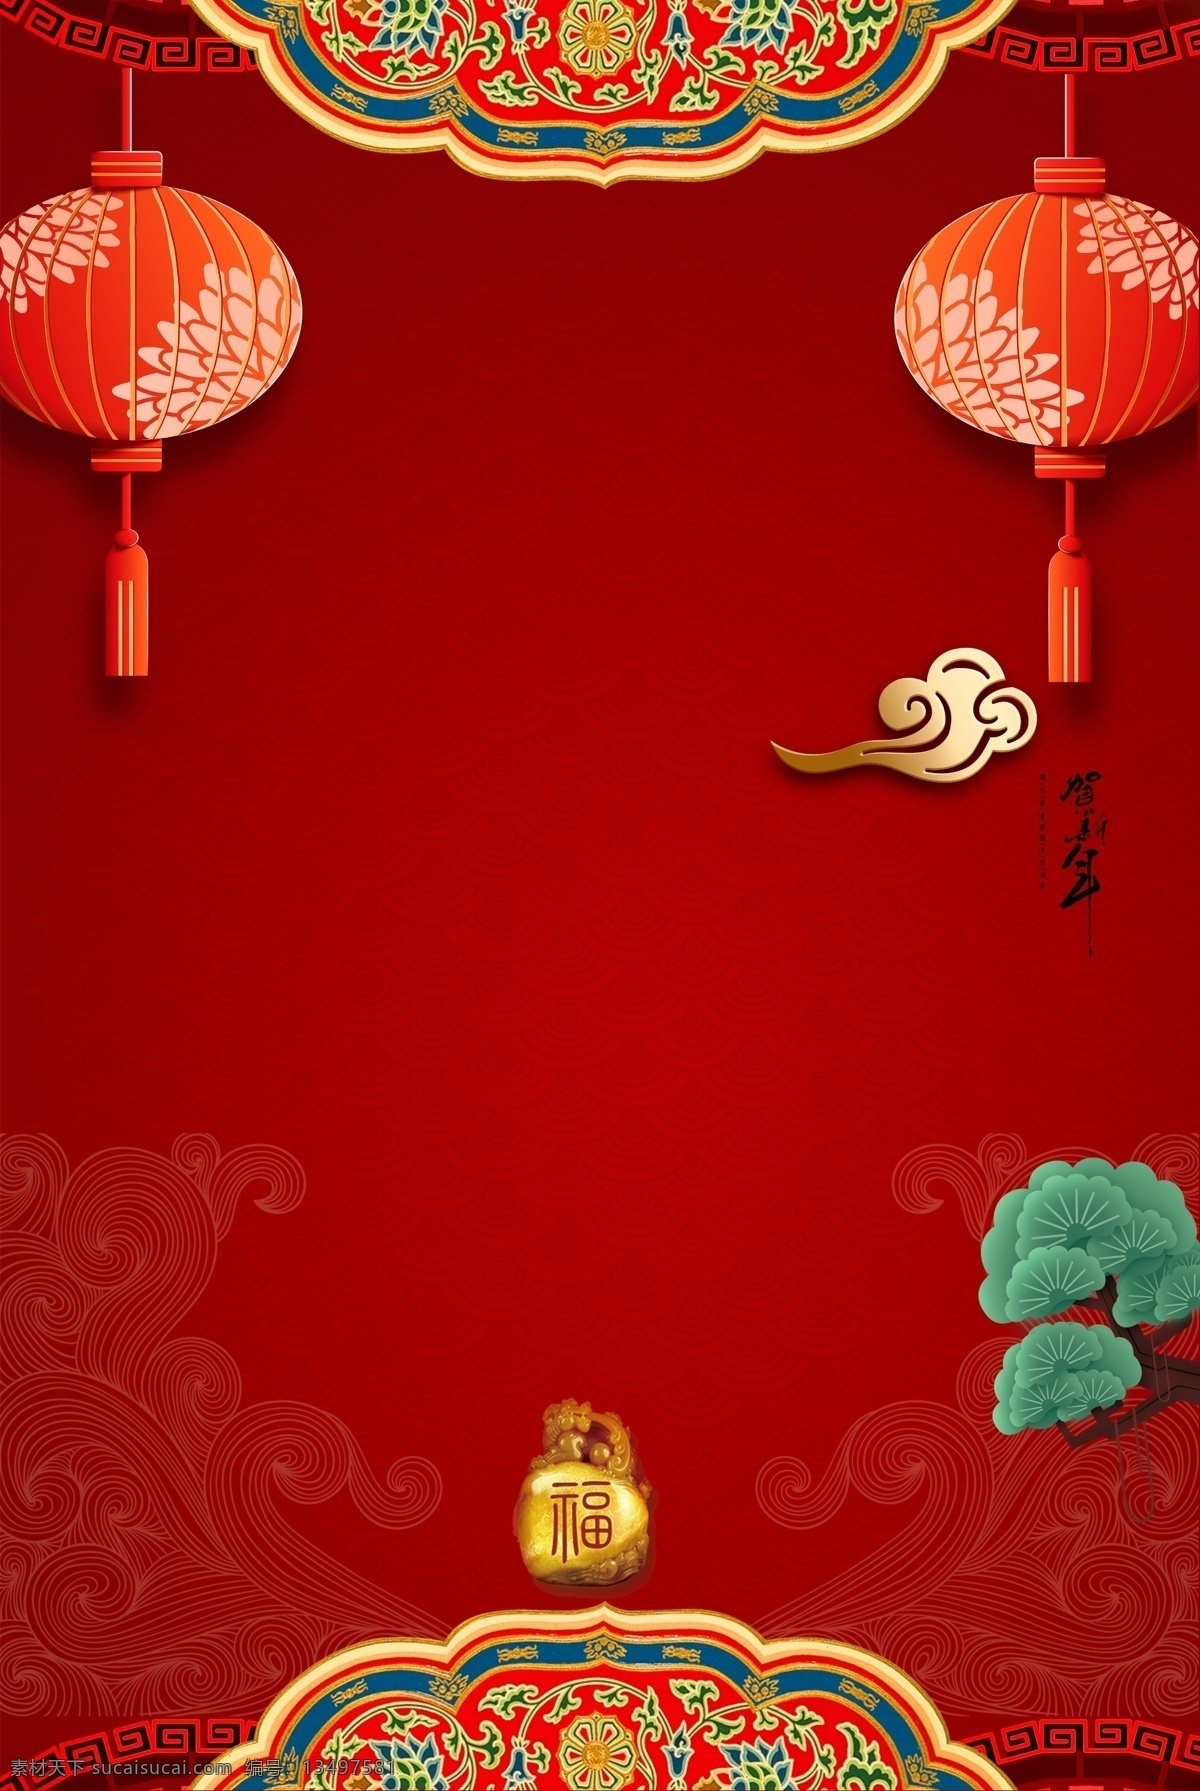 喜庆 节日 类 广告 背景图片 节日类 背景4 扇子 红底板 红色展板 中国风 灯笼 松树